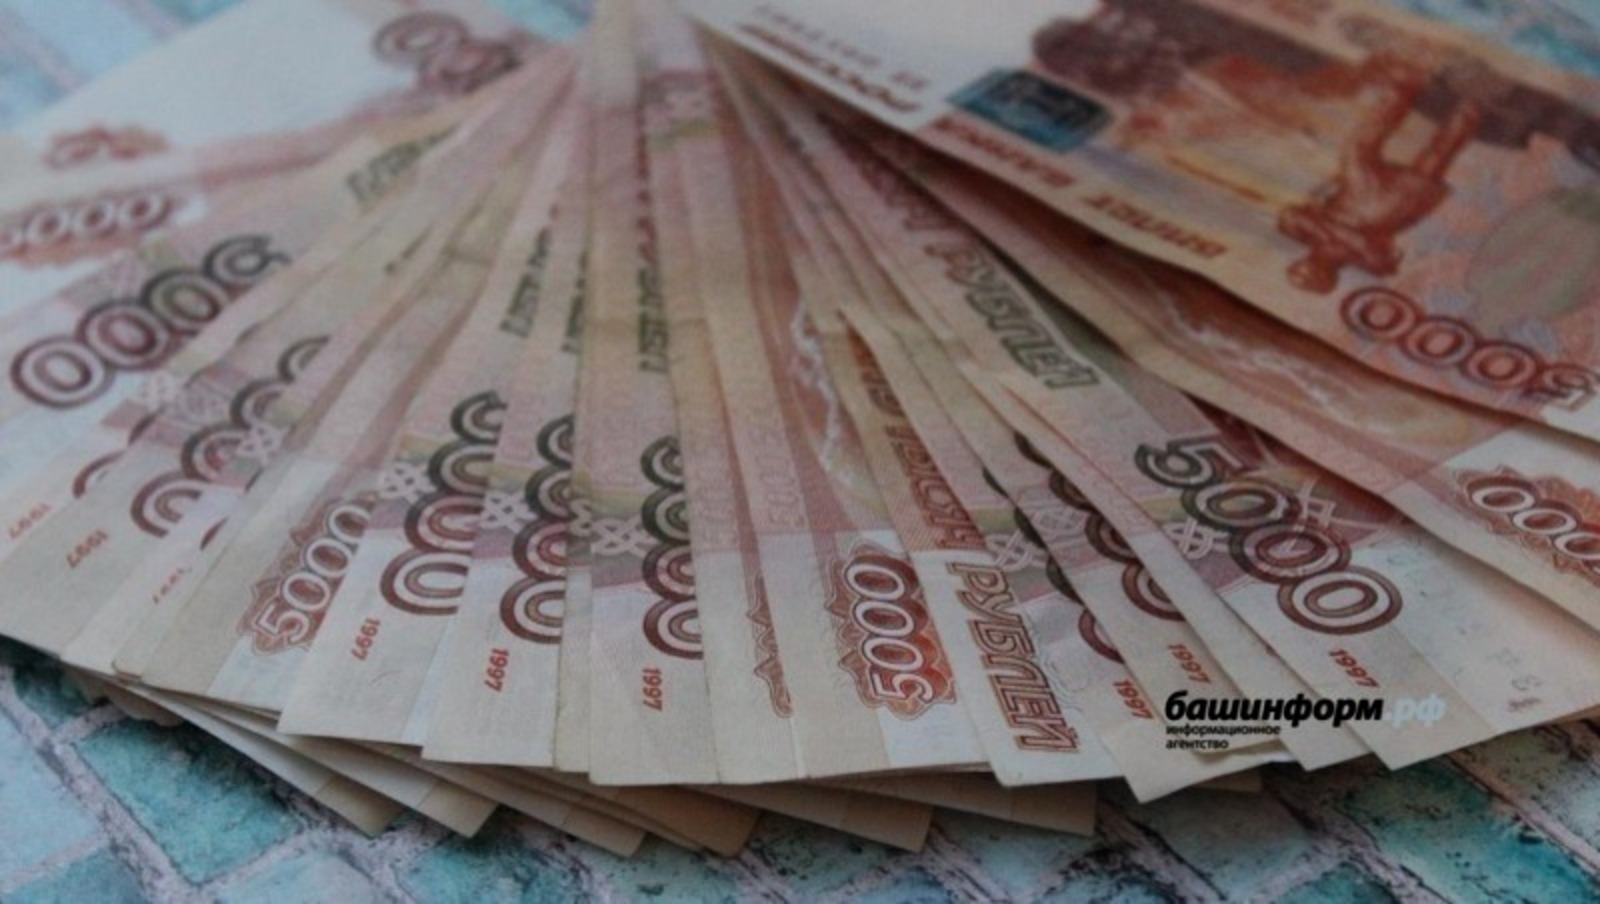 Жительница Стерлитамака стала жертвой обмана, лишившись почти миллиона рублей